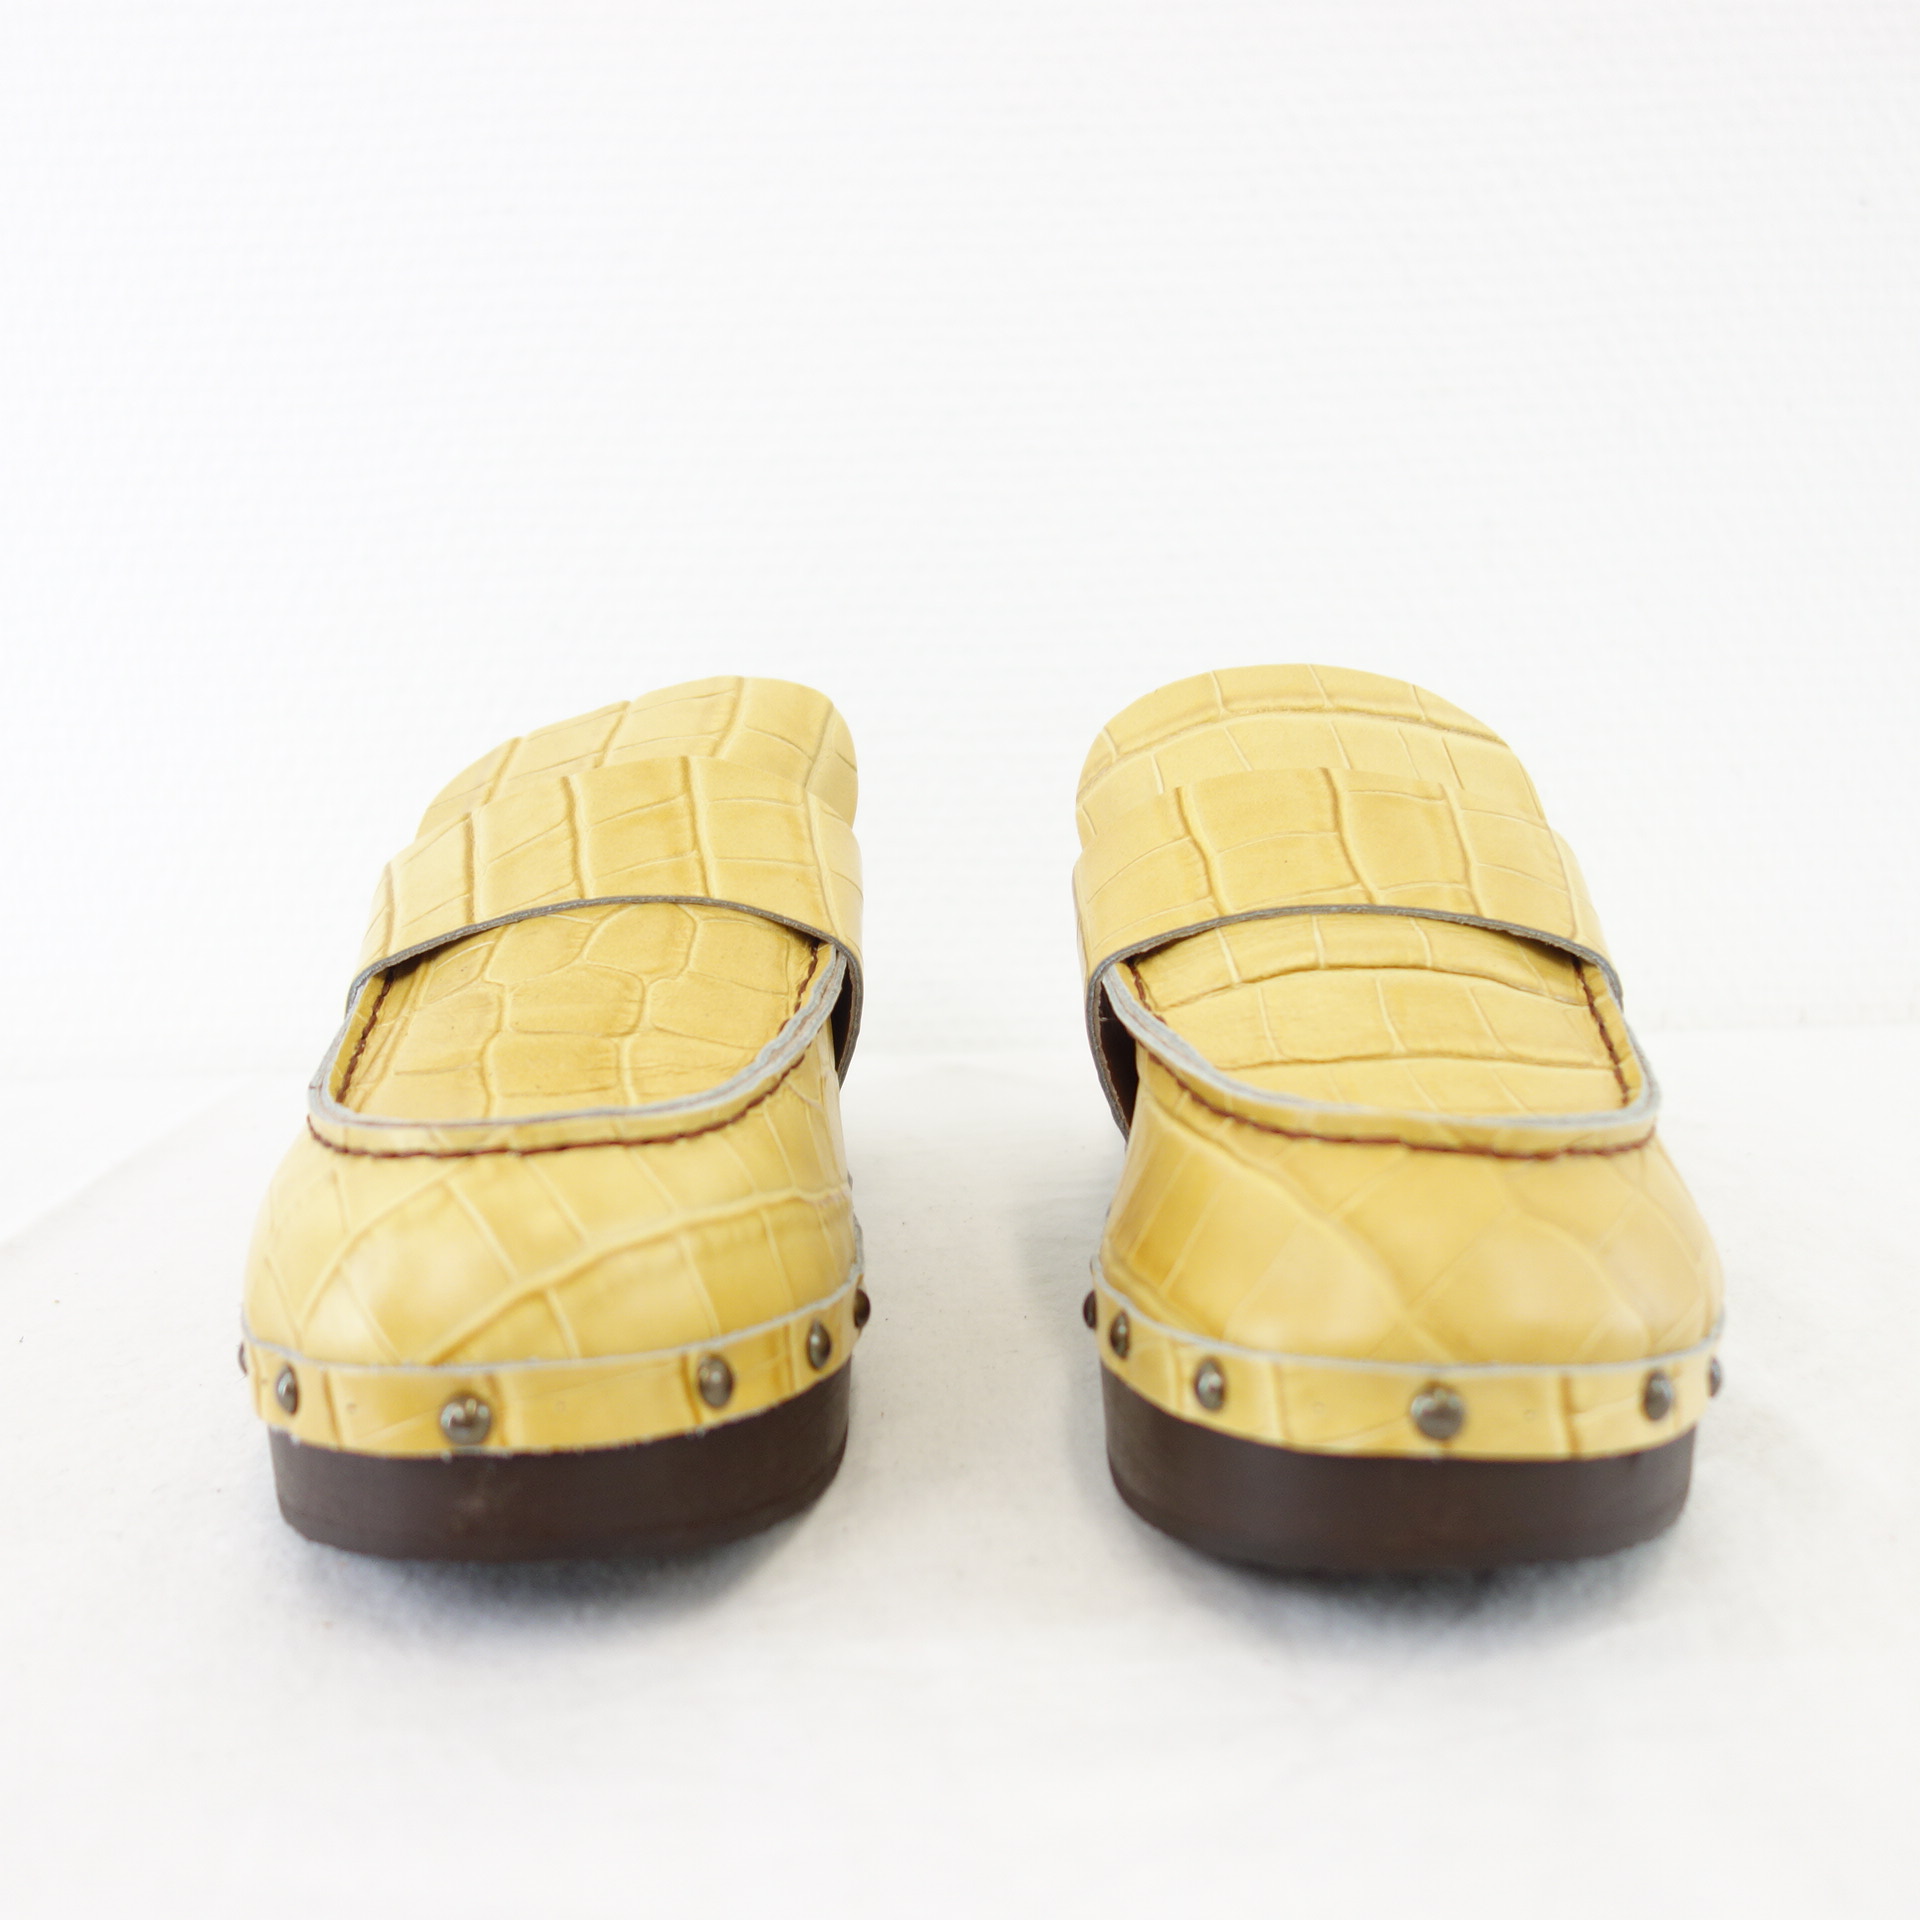 ANTIDOTI Schuhe Holz Clogs Pastell Gelb Leder Modell MOKY